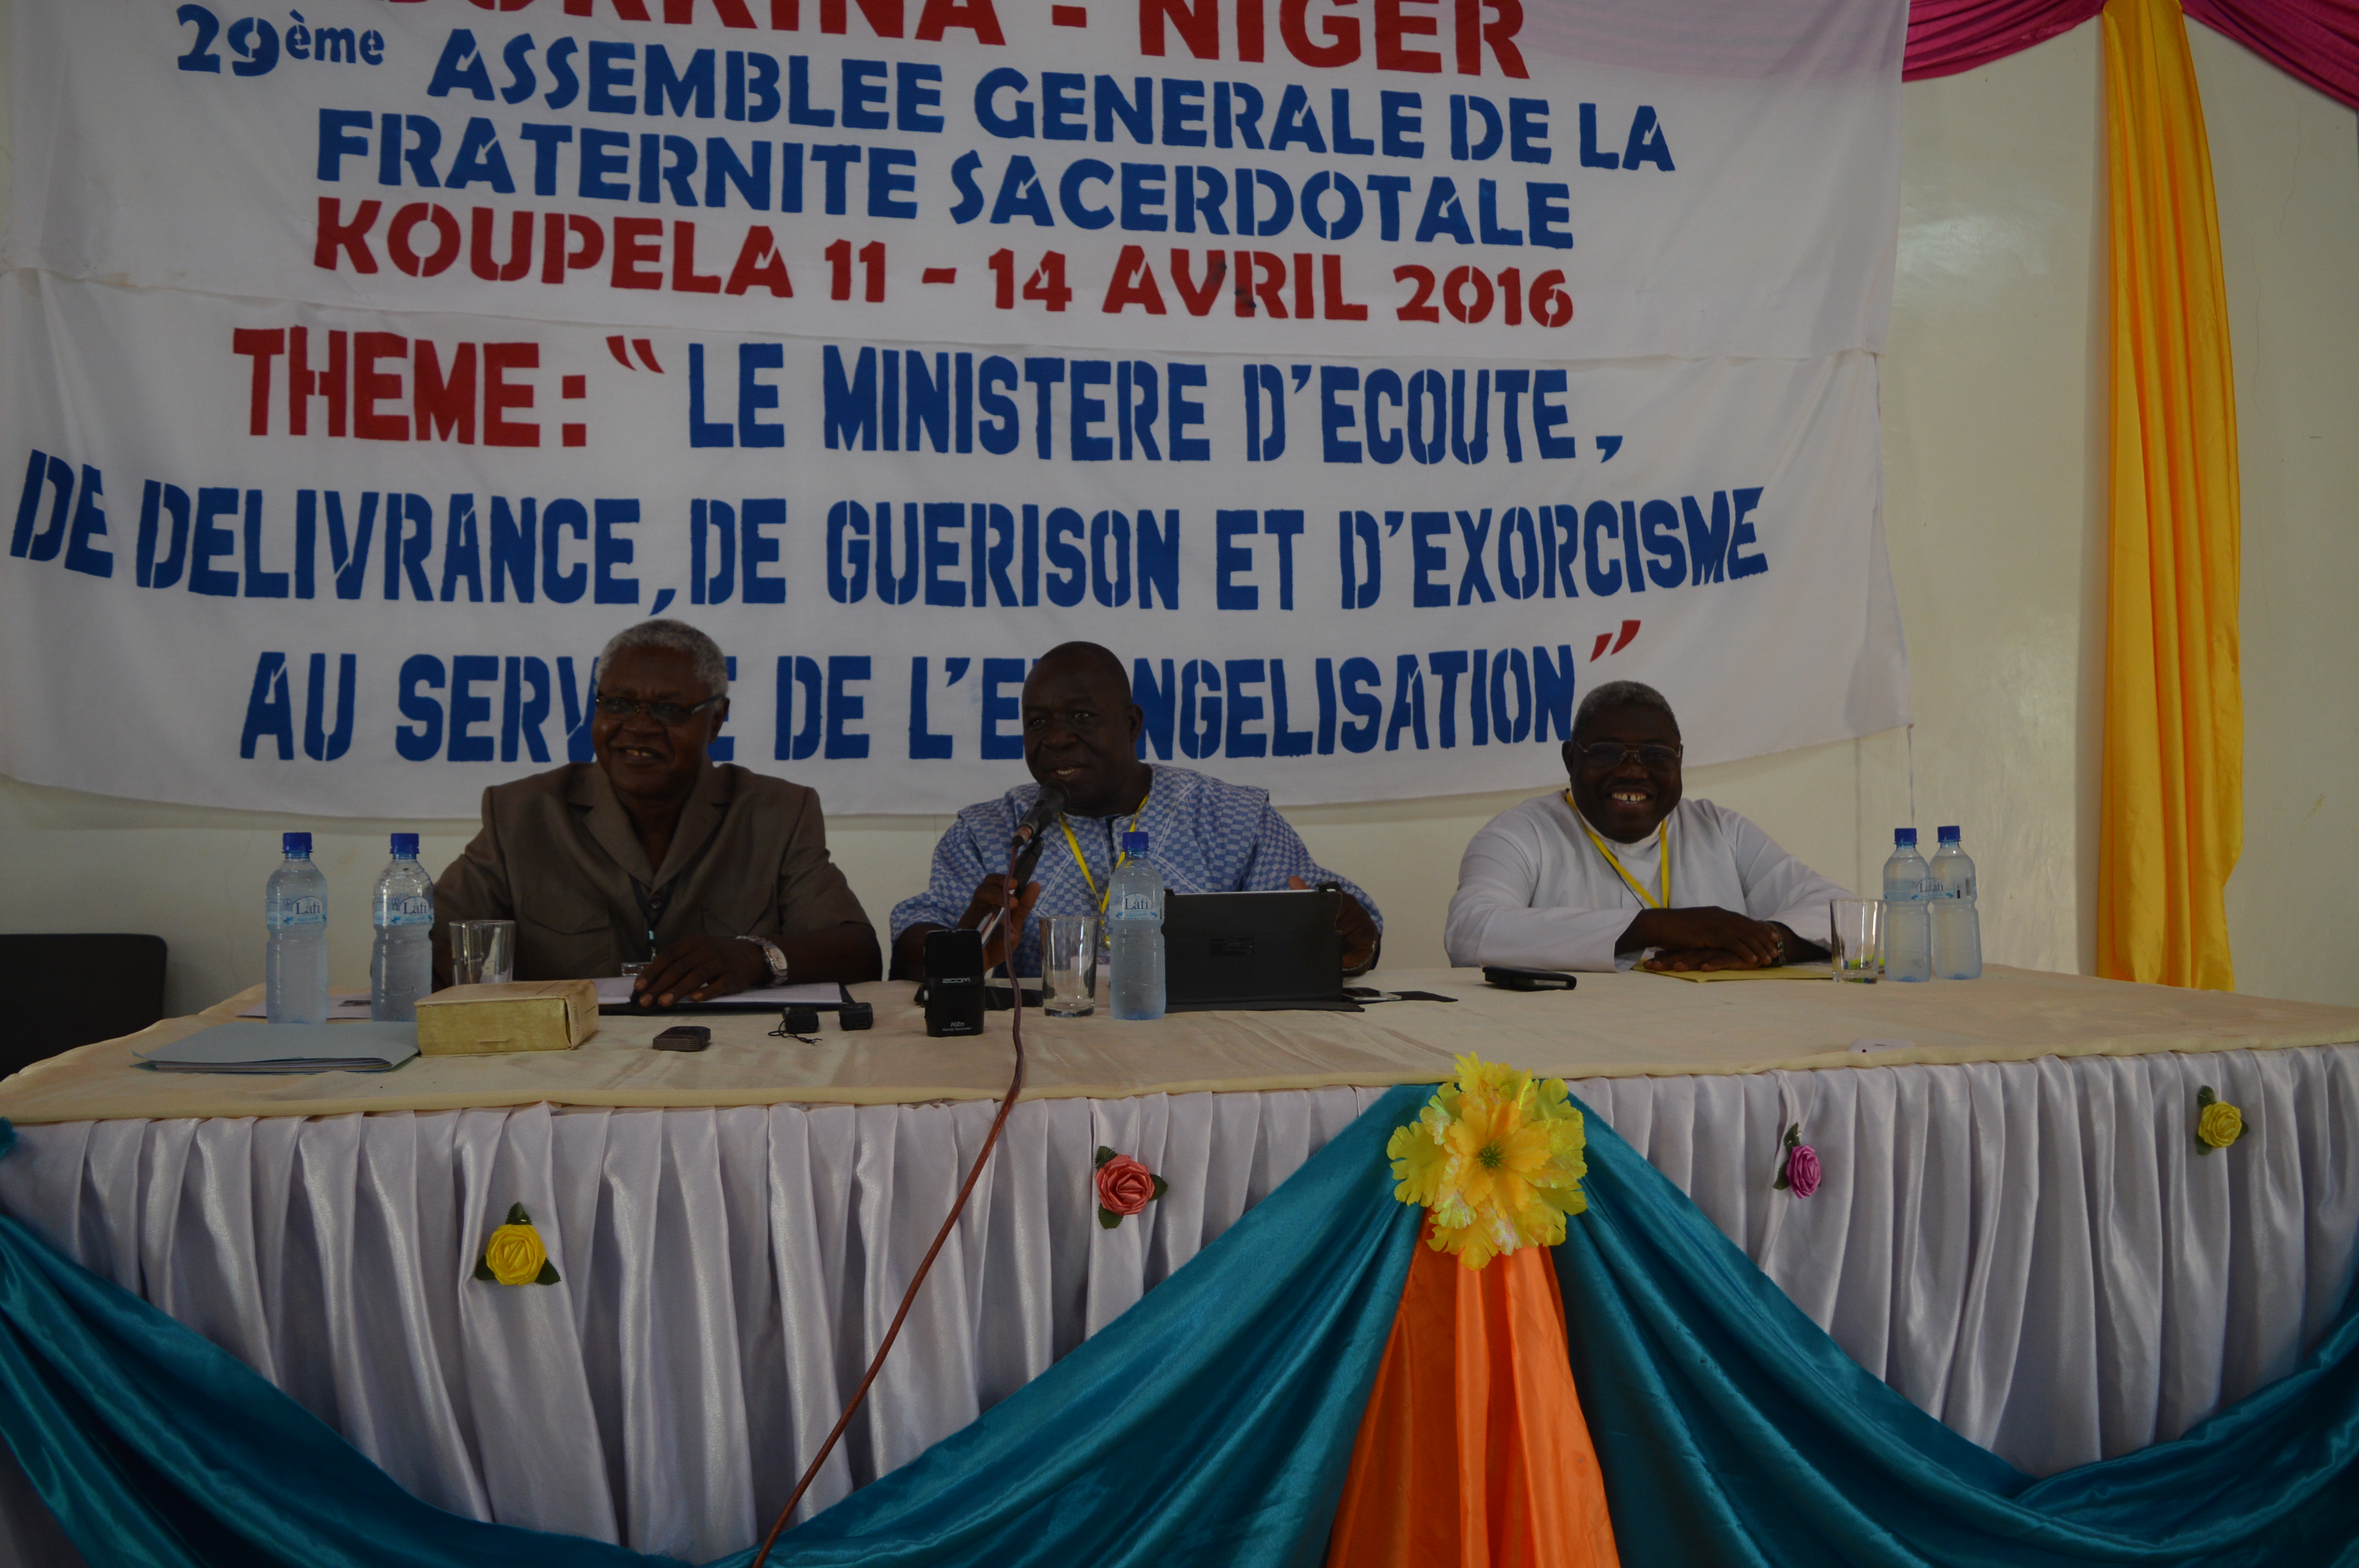 Les abbés Bernard Désiré Yanogo de l’archidiocèse de Ouagadougou et Baudouin Poda du diocèse de Diébougou